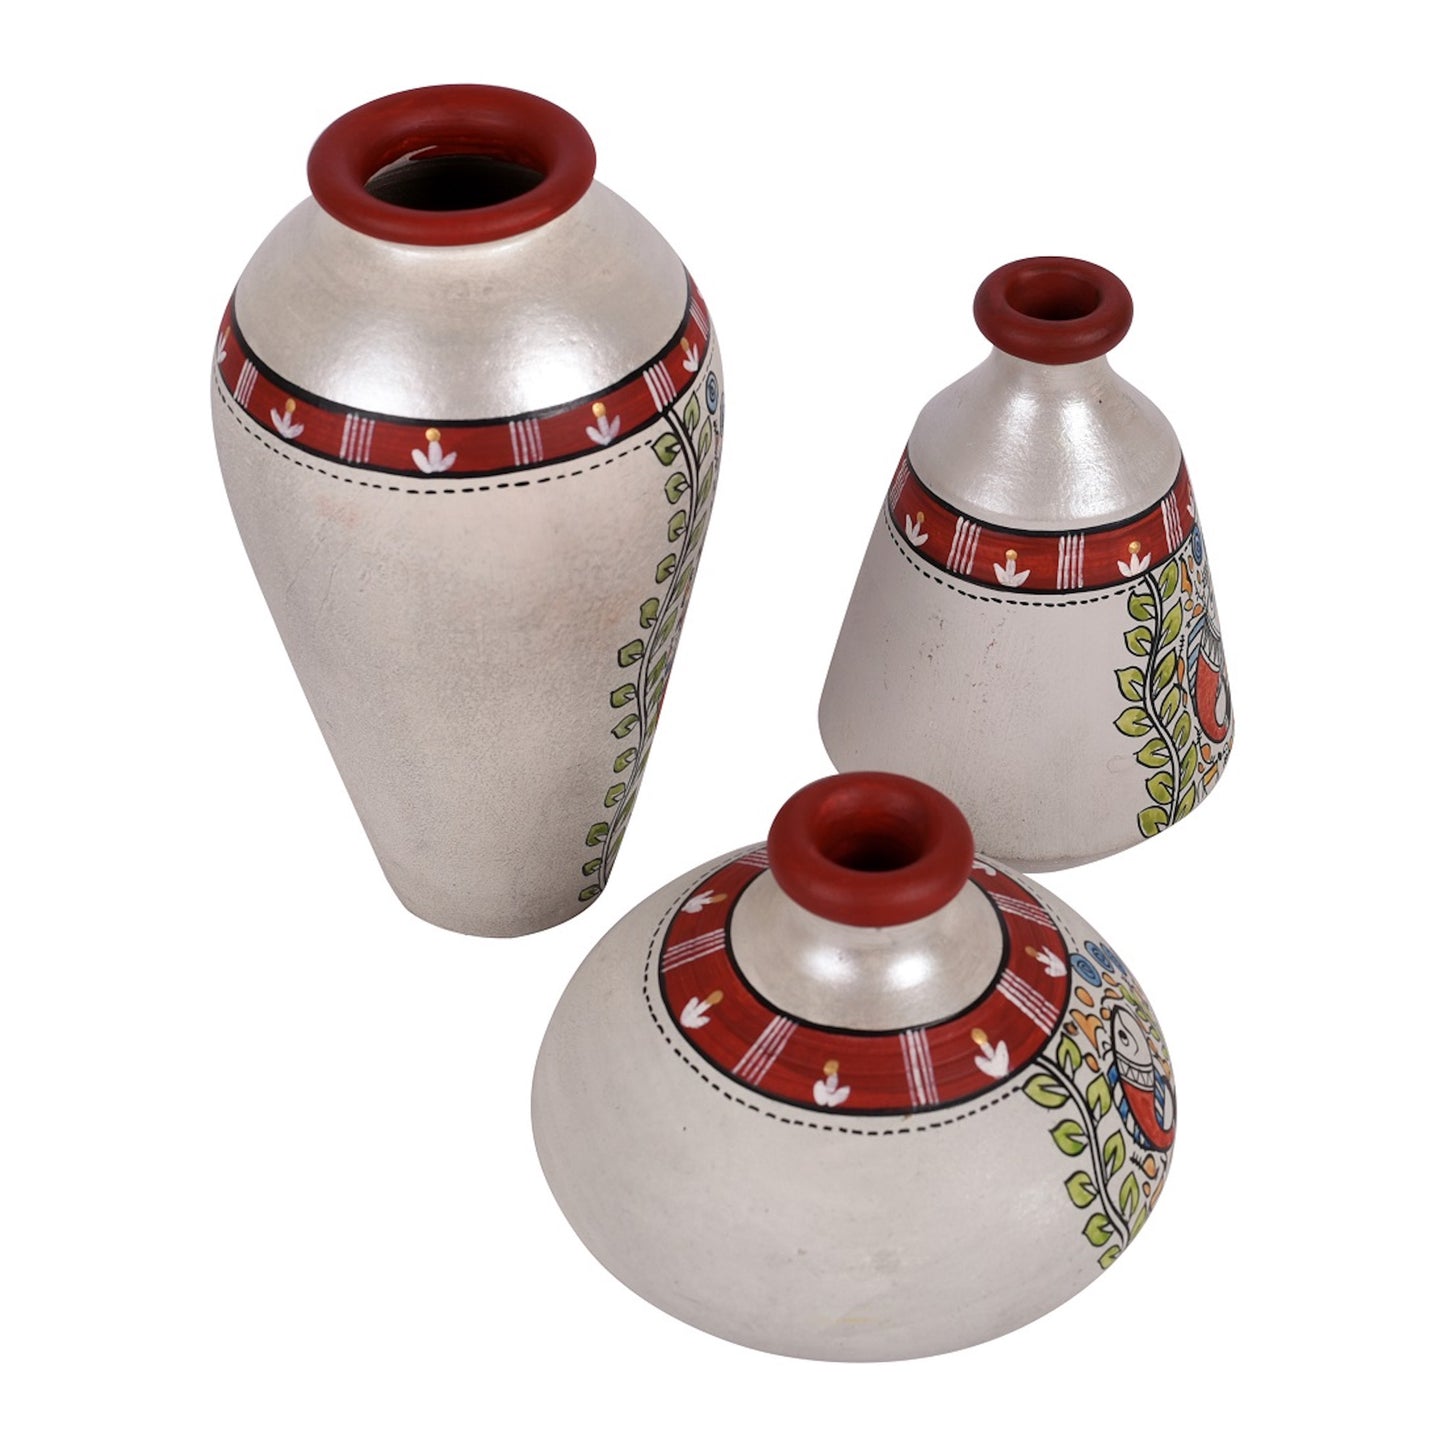 Vase Earthen Miniatures White Madhubani (Set of 3) 4.4/3/6